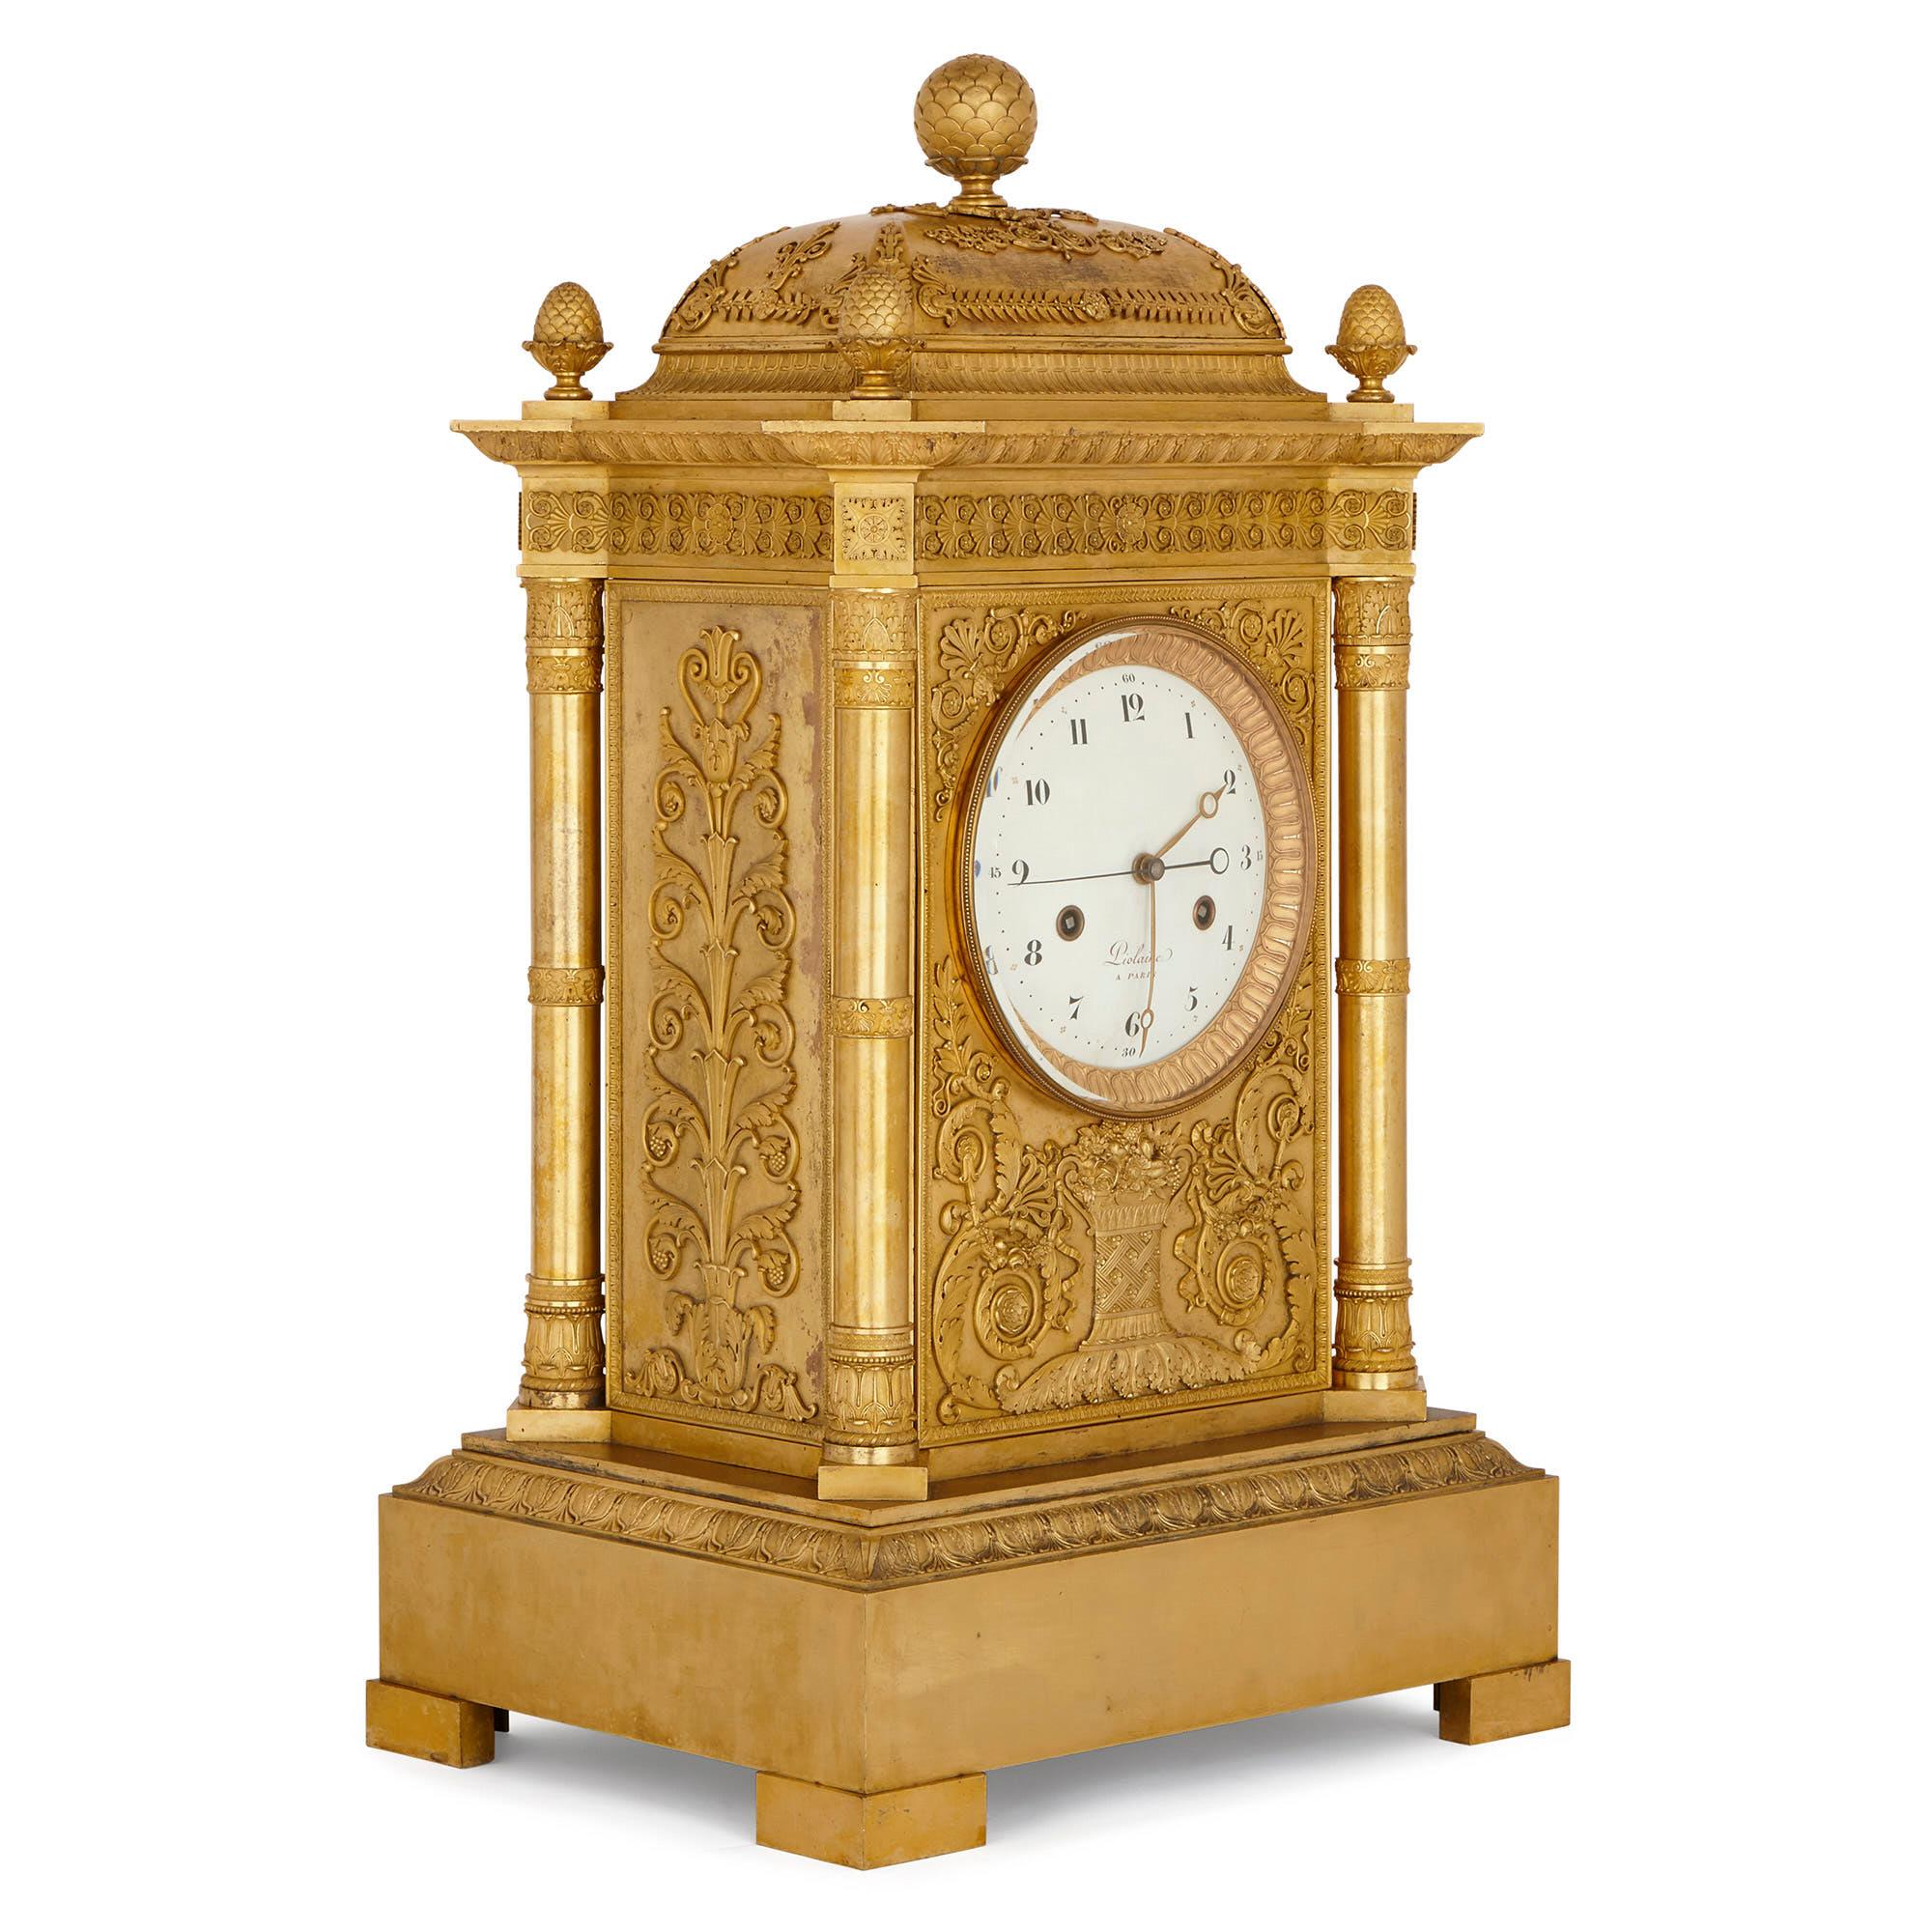 Diese prächtige Kaminsimsuhr - sie misst beeindruckende 82 cm in der Höhe - wurde in Frankreich in der Zeit hergestellt, als Napoleon I. Kaiser war (1804-1814, 1815). Die Uhr wurde von Michel-François Piolaine gefertigt, einem bedeutenden Uhrmacher,